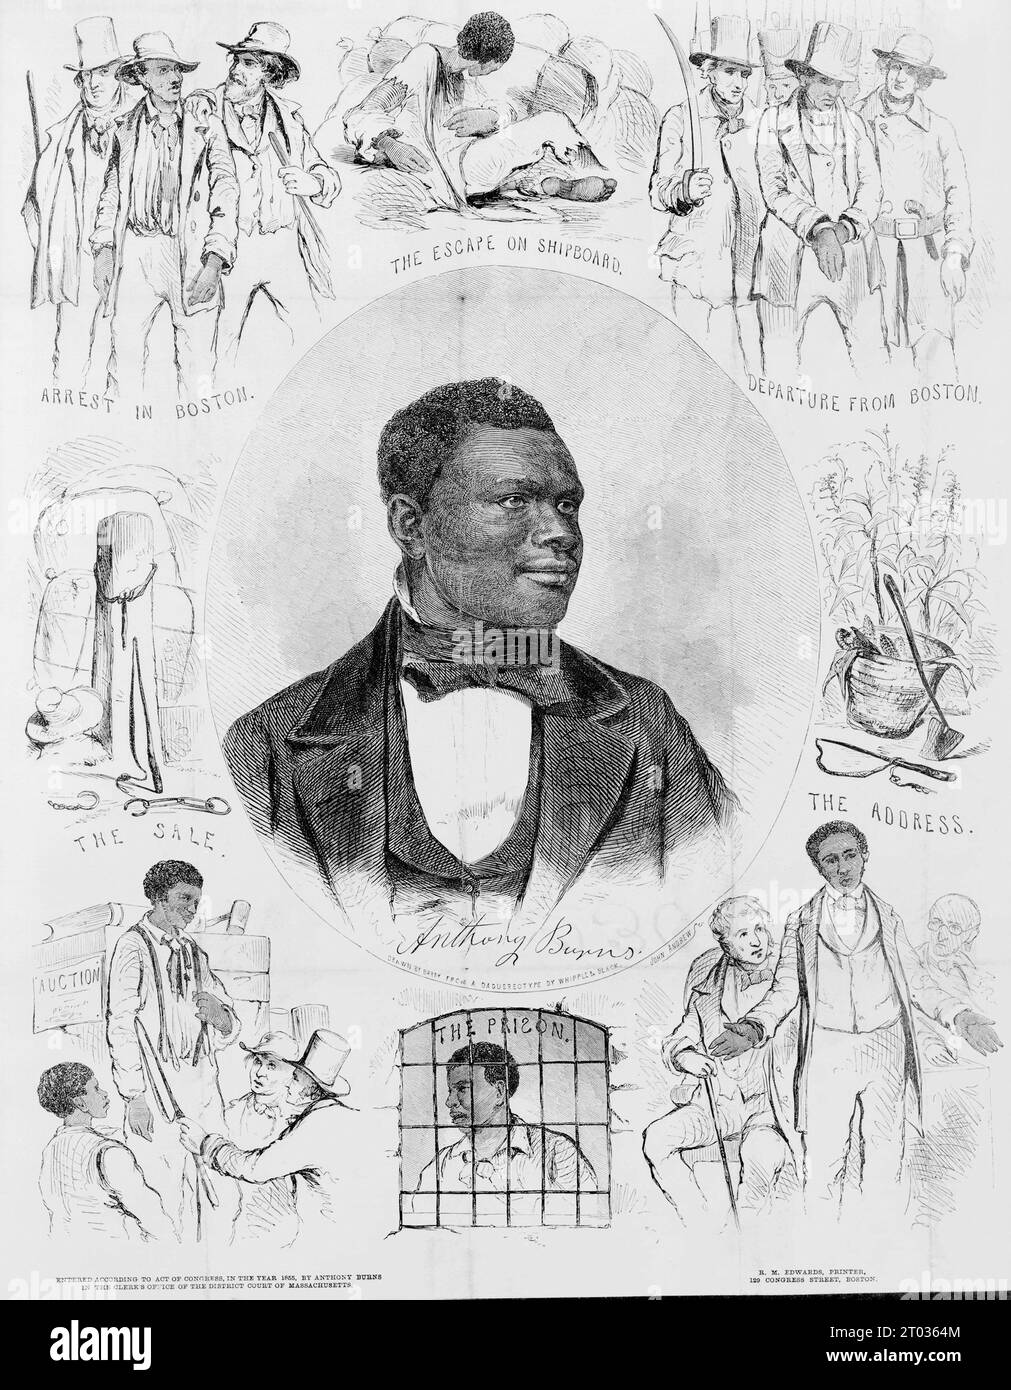 Un ritratto dello schiavo fuggitivo Anthony Burns, il cui arresto e processo ai sensi del Fugitive Slave Act del 1850 scatenò rivolte e proteste da parte di abolizionisti e cittadini di Boston nella primavera del 1854. Foto Stock